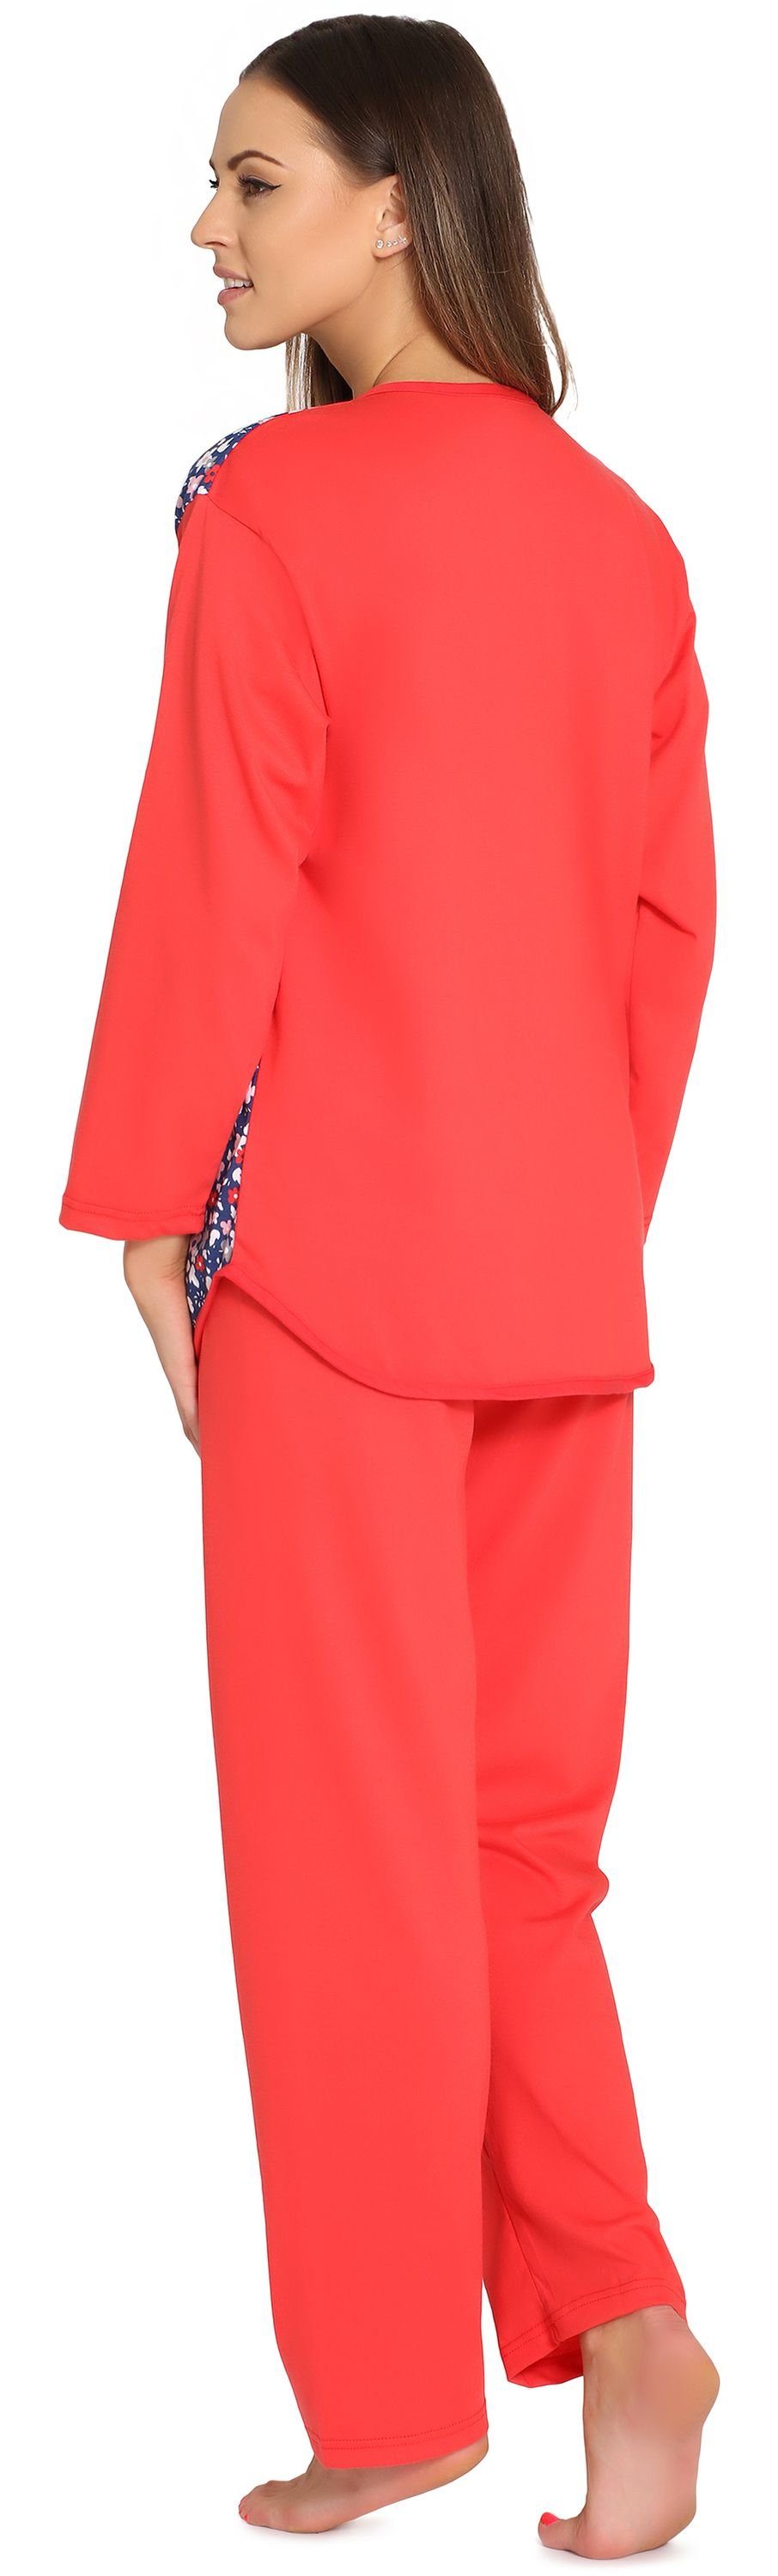 Schlafanzug Knopfleiste Schlafanzug MSDR5006 Style Damen Merry Coral/Blumen